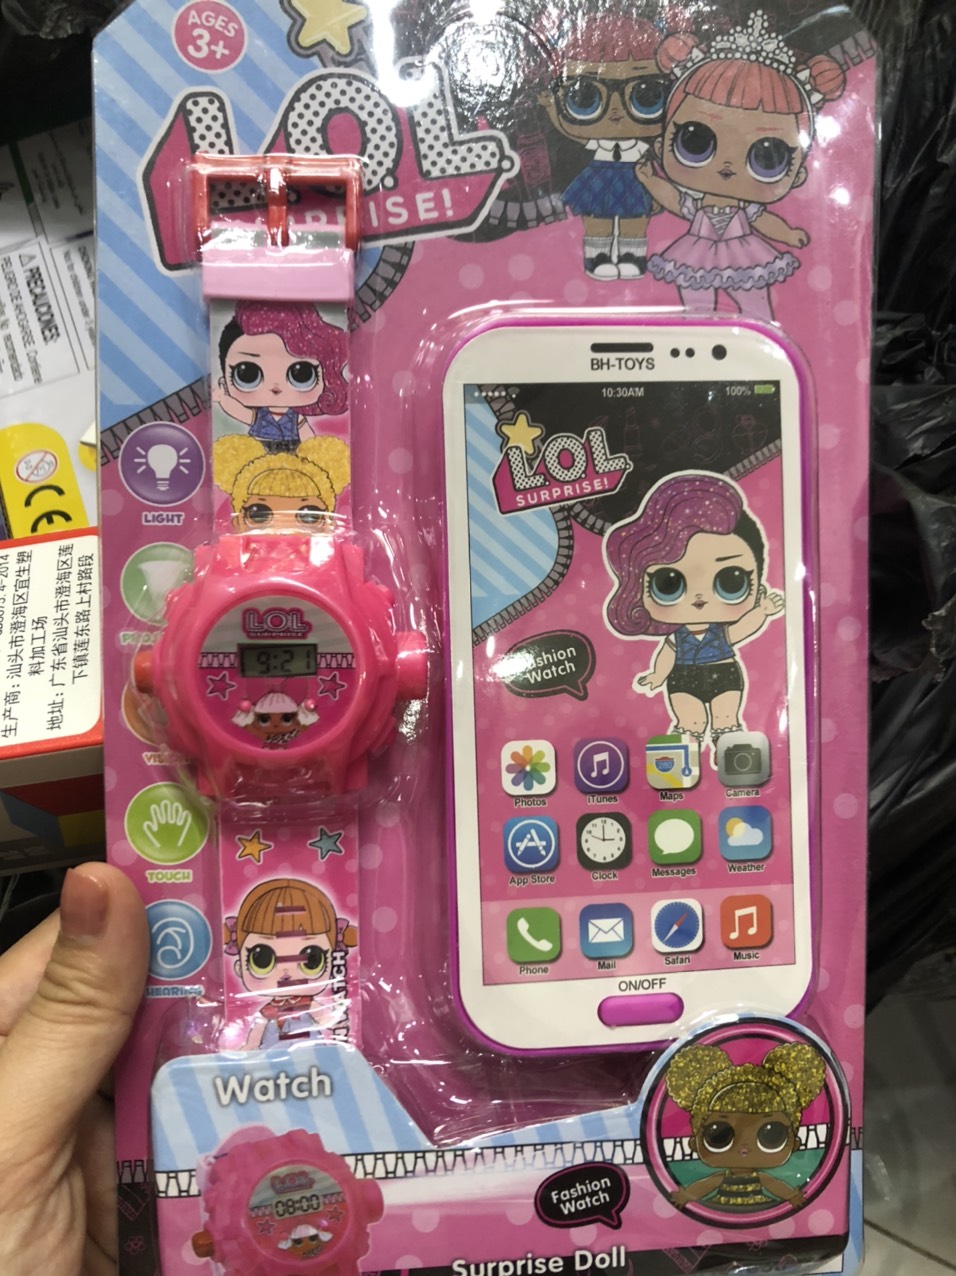 Đồng hồ đeo tay và điện thoại phát nhạc Elsa, các nhân vật hoạt hình - Set đồ chơi cho bé - Time365